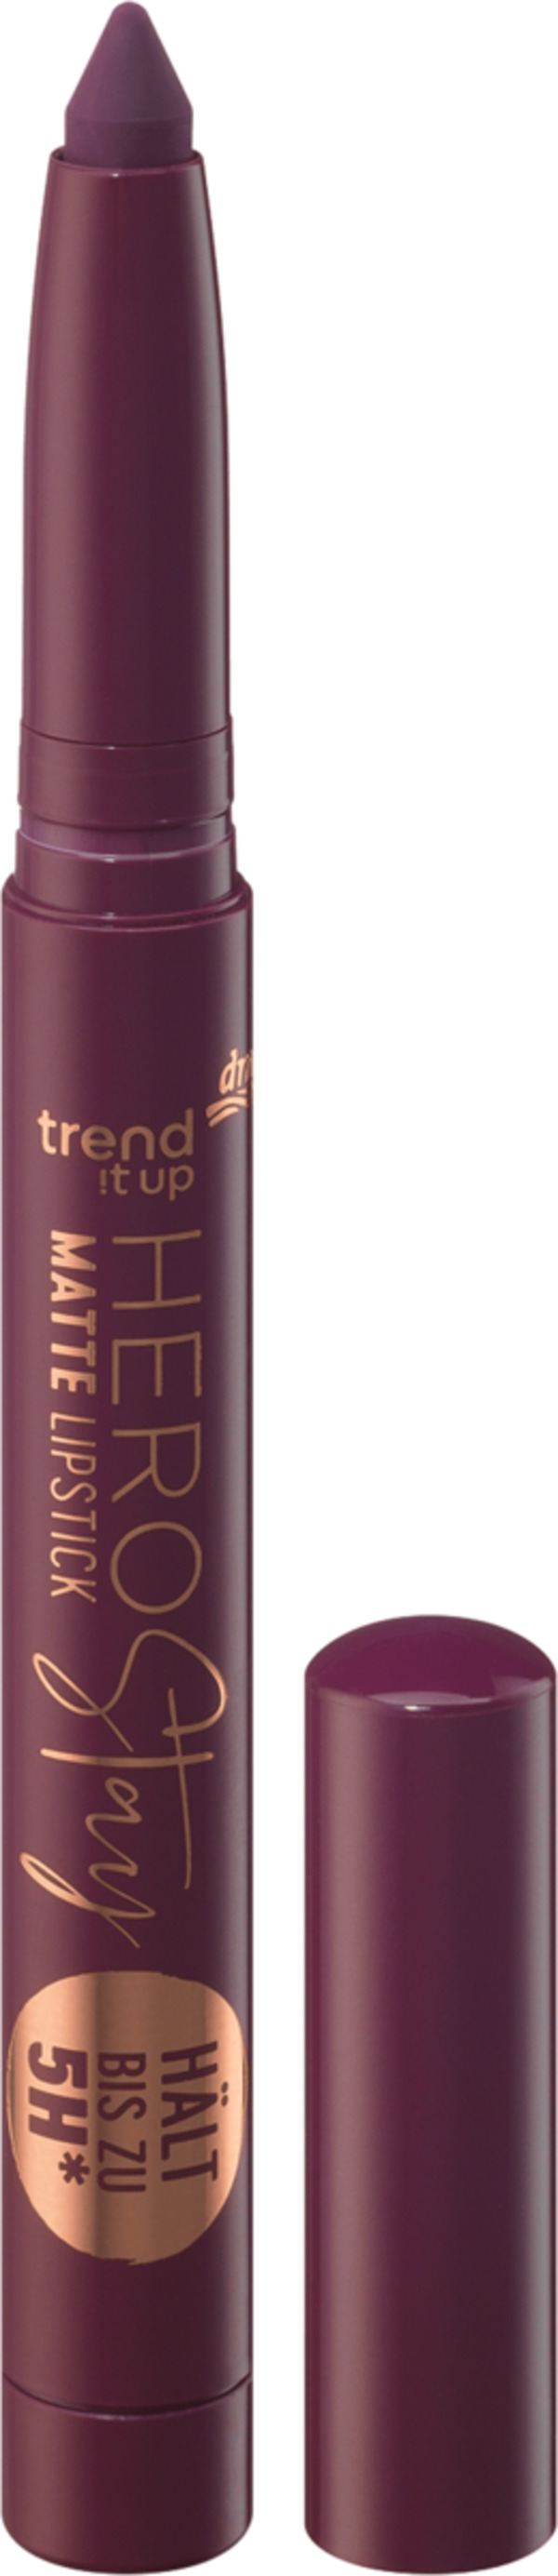 Bild 1 von trend !t up Lippenstift Hero Stay Matte 030 Purple